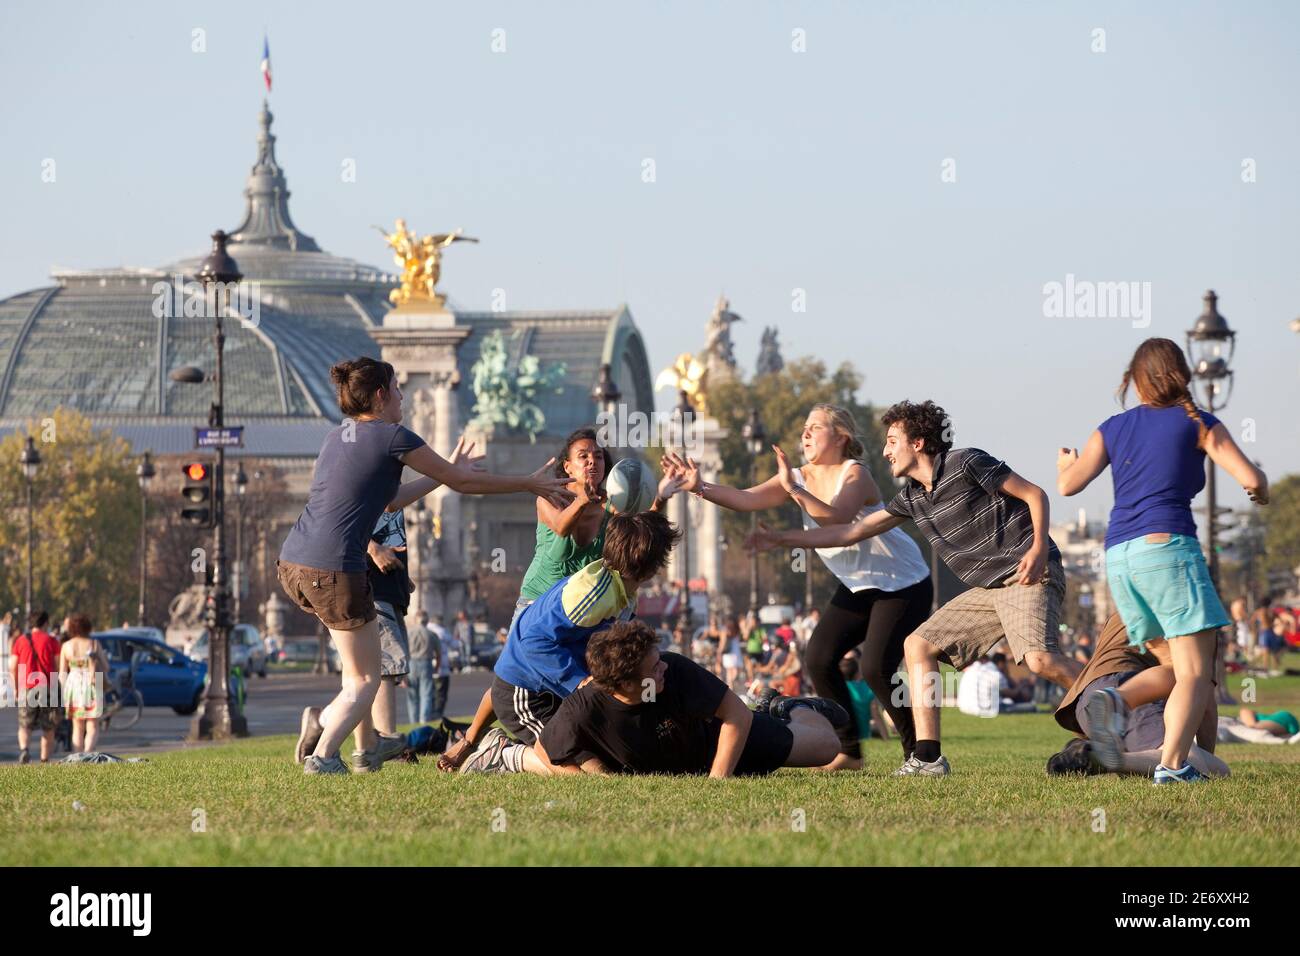 Junge Leute auf einer Wiese mit dem Grand Palais im Hintergrund. Stockfoto